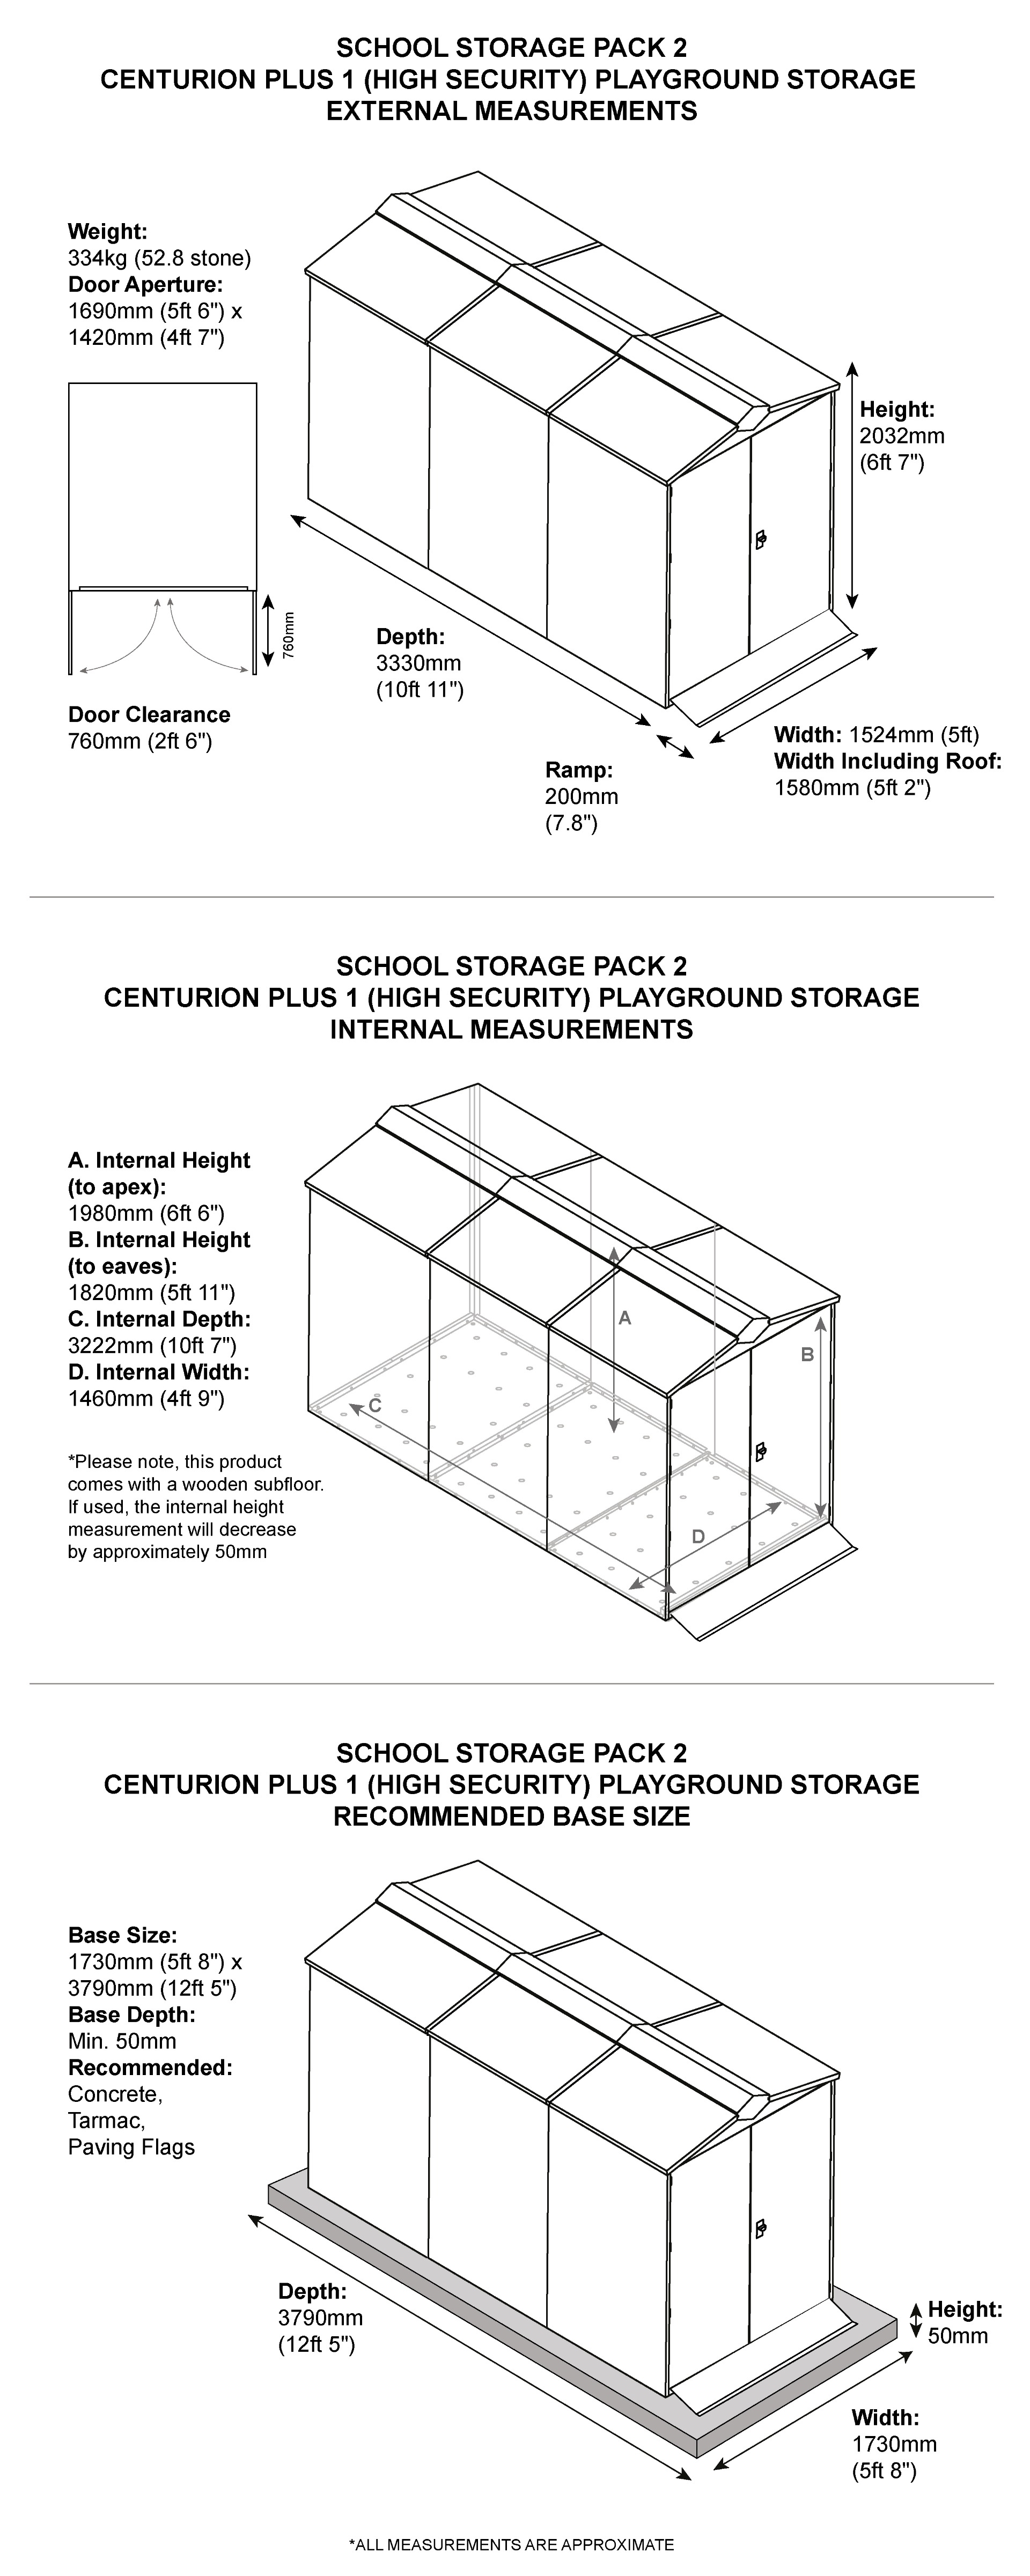 School Storage Pack 2 Dimensions